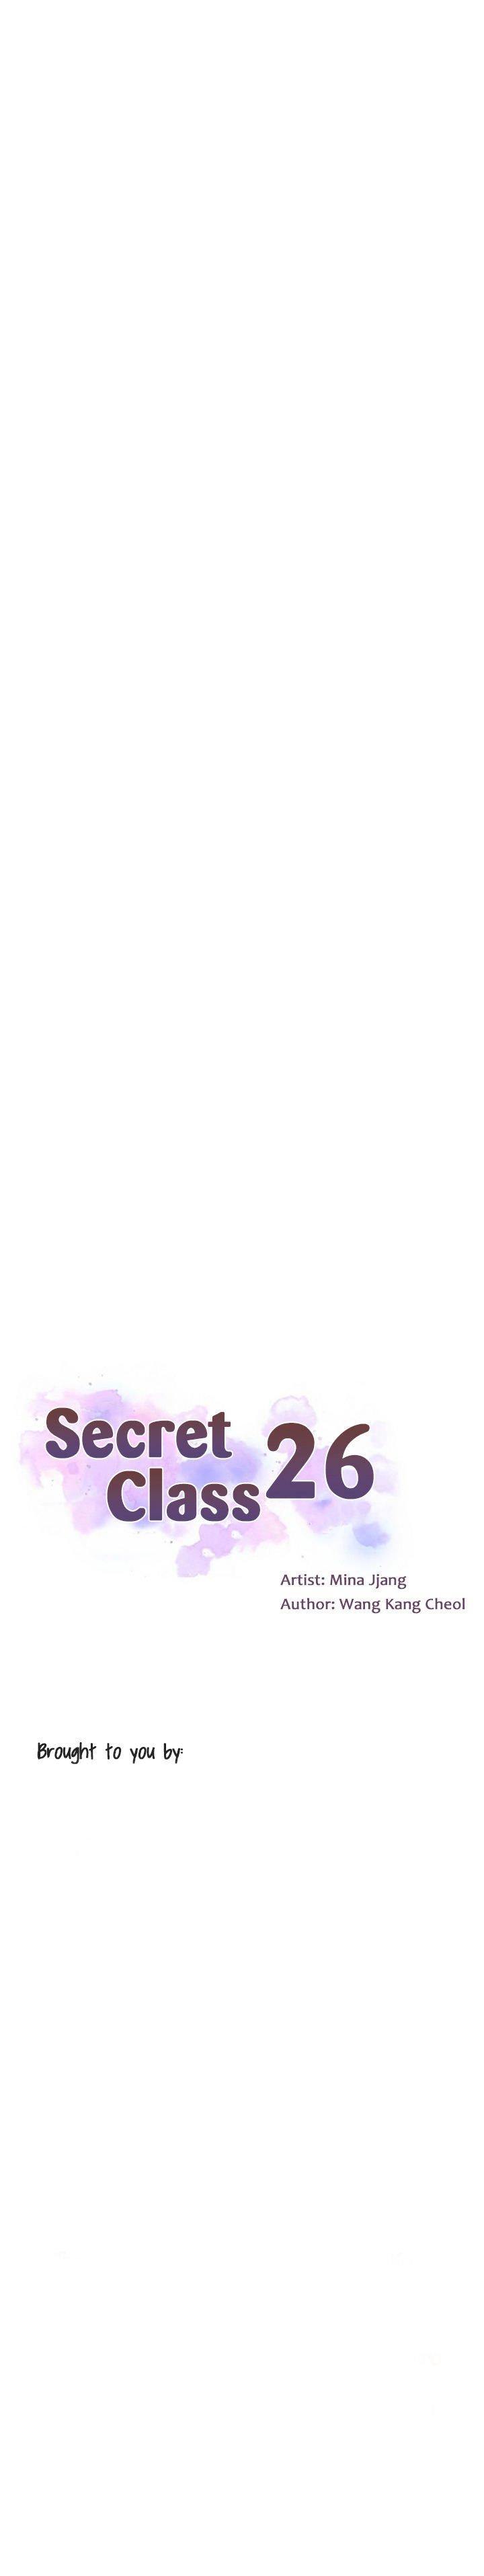 Secret Class Ch.44/? 362